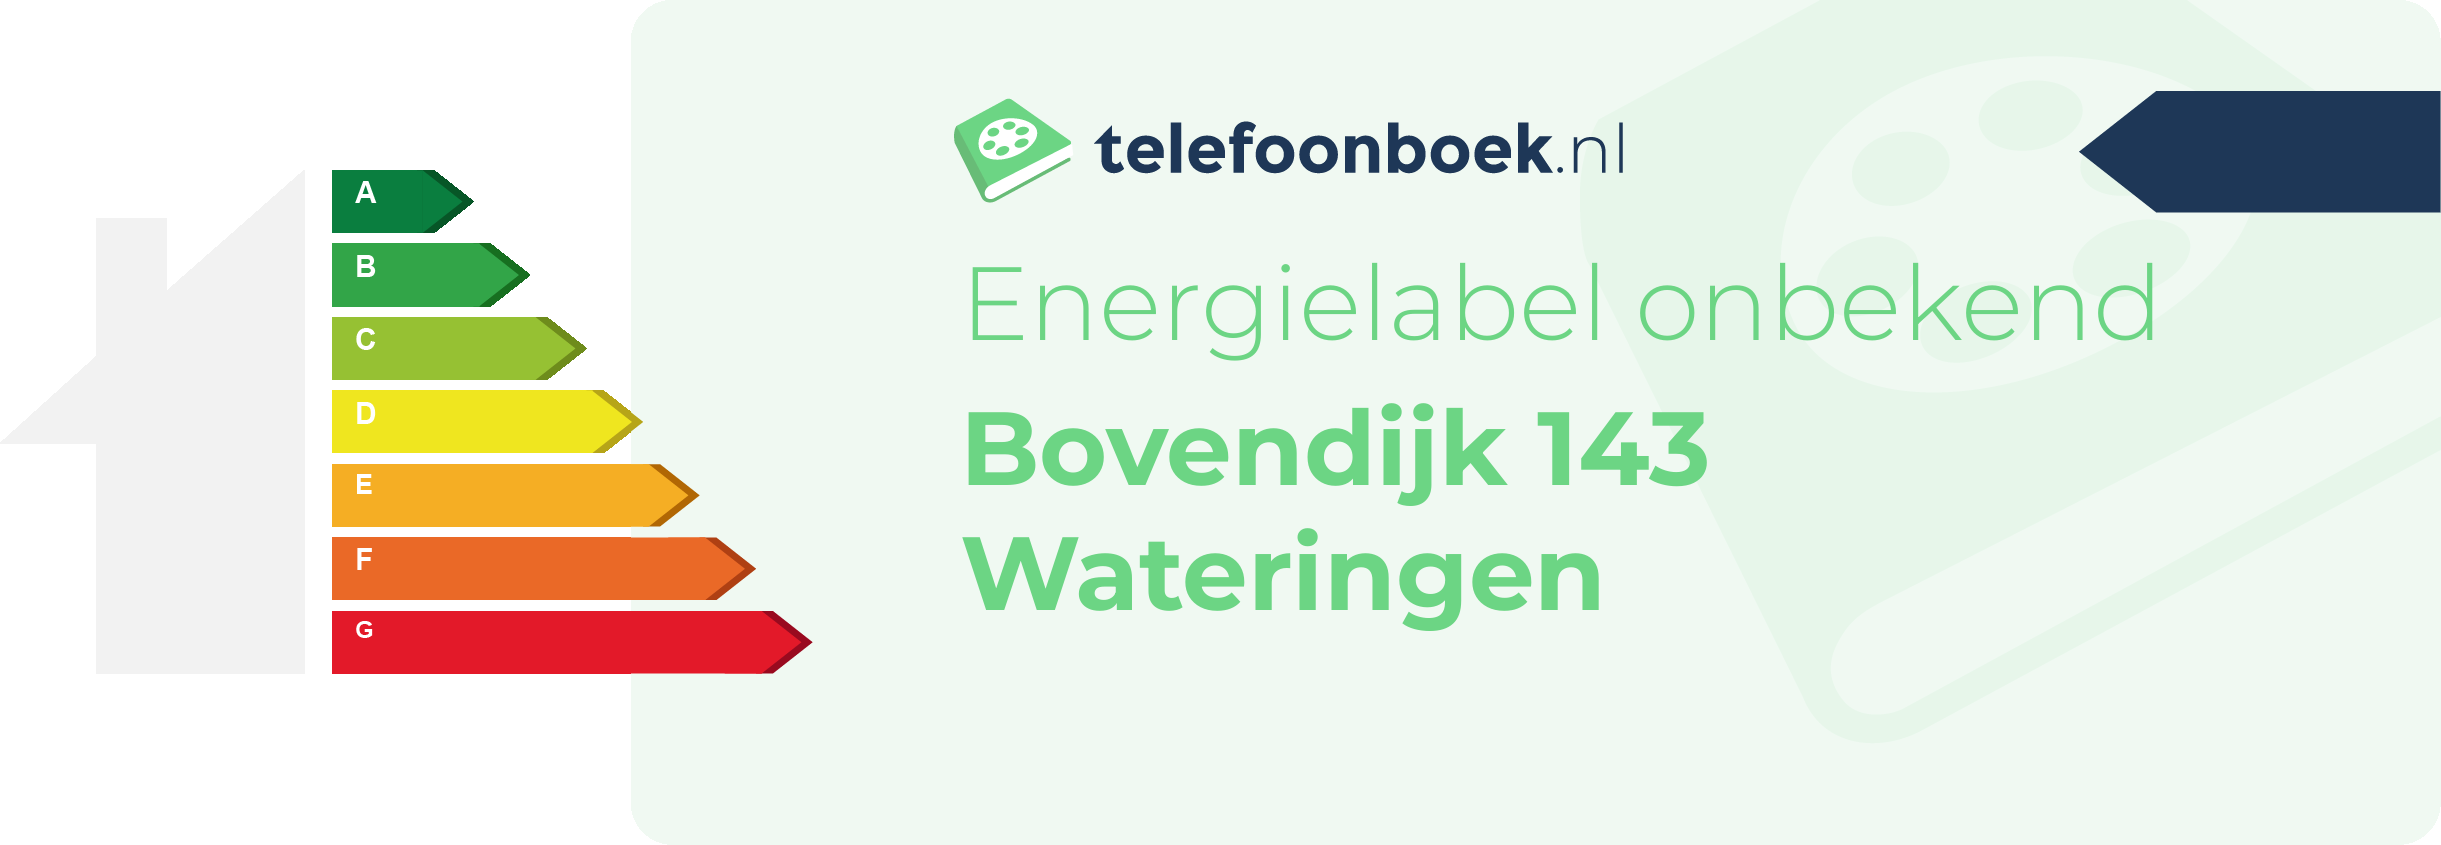 Energielabel Bovendijk 143 Wateringen